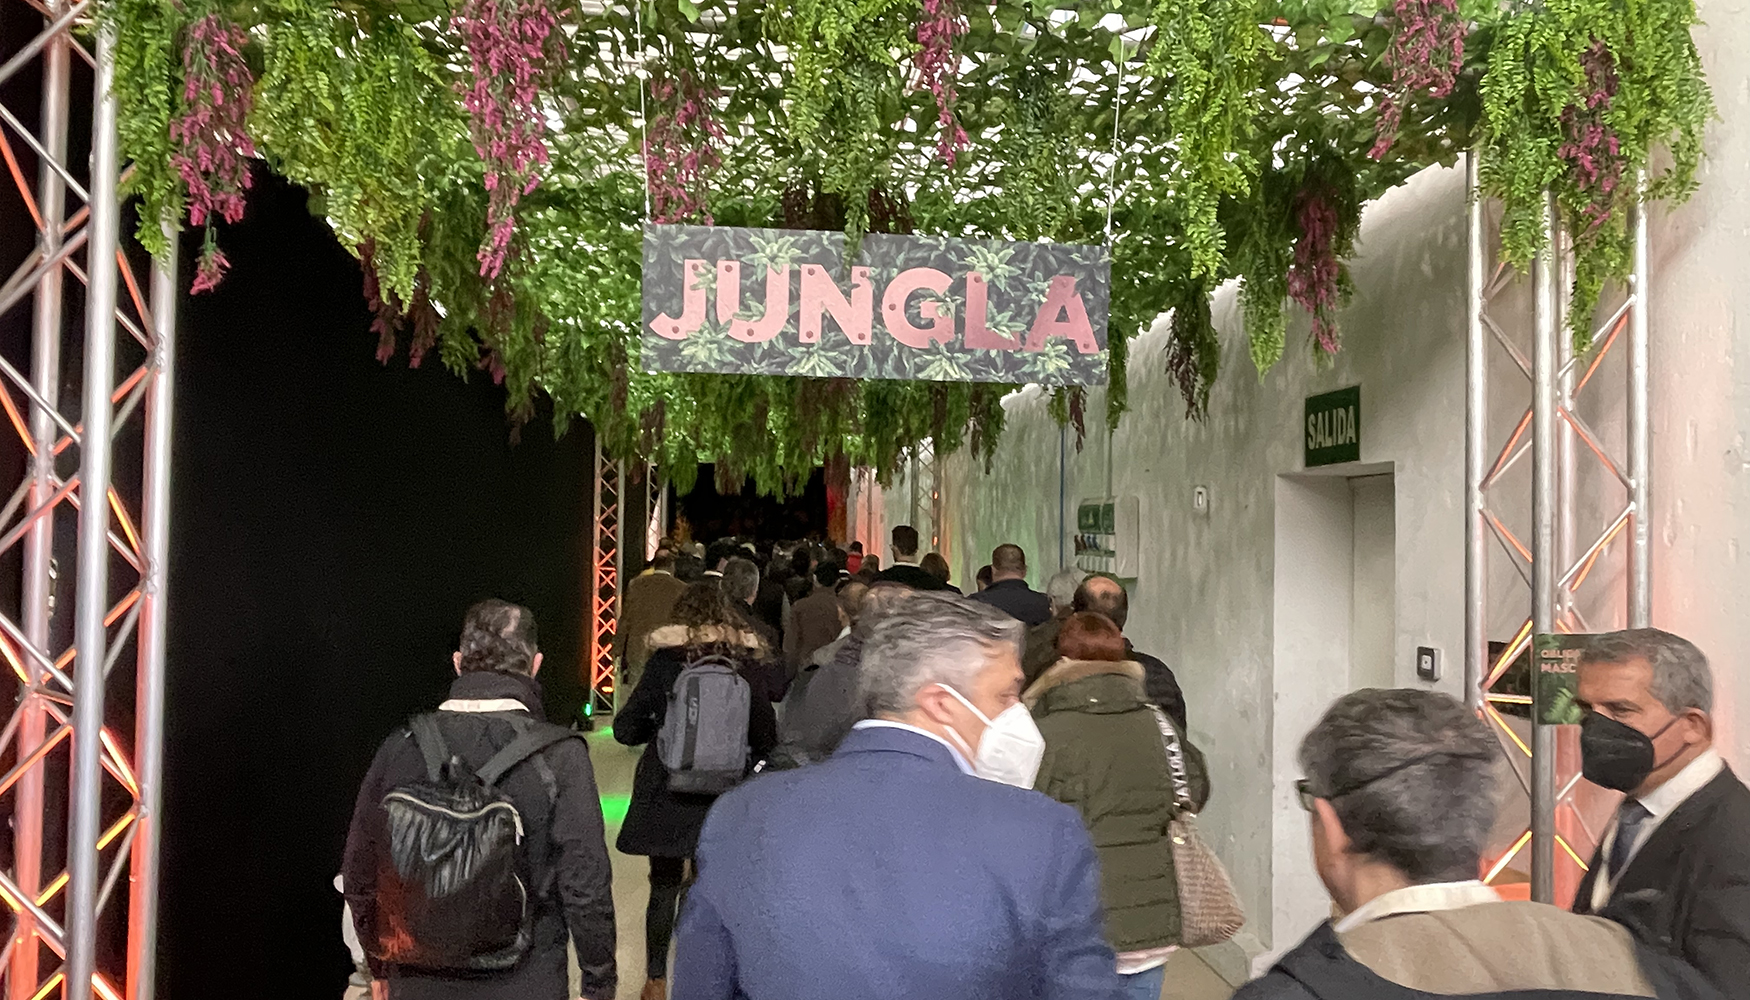 Entrada a la 'jungla' (zona de auditorio donde se llevaron a cabo las presentaciones)